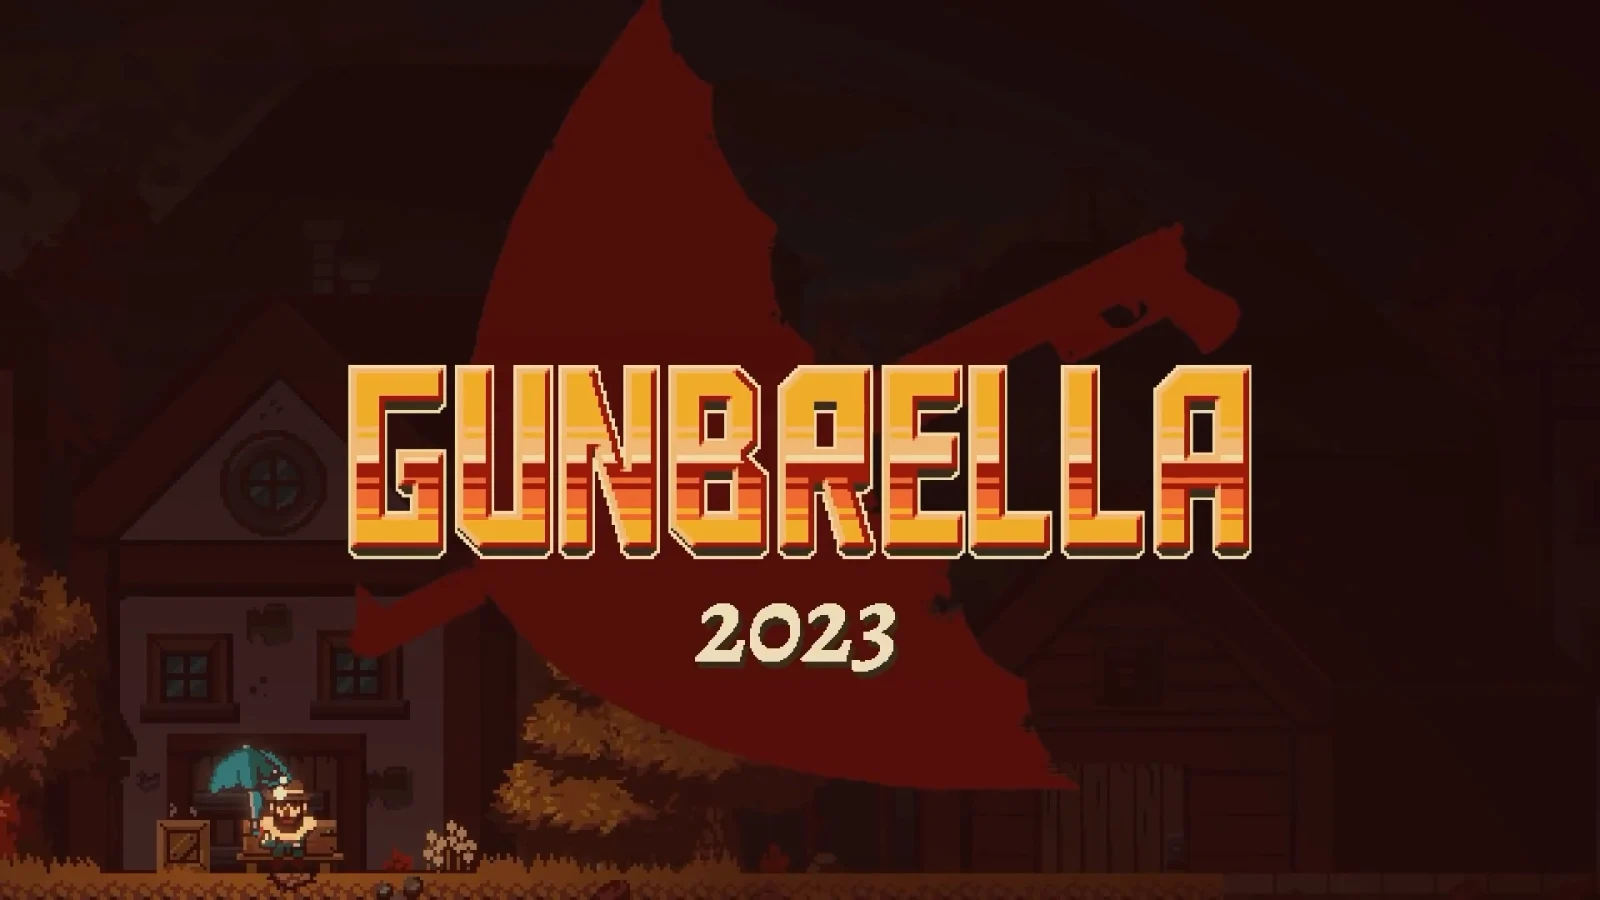 枪伞合一，像素动作游戏《Gunbrella》将在2023年发售